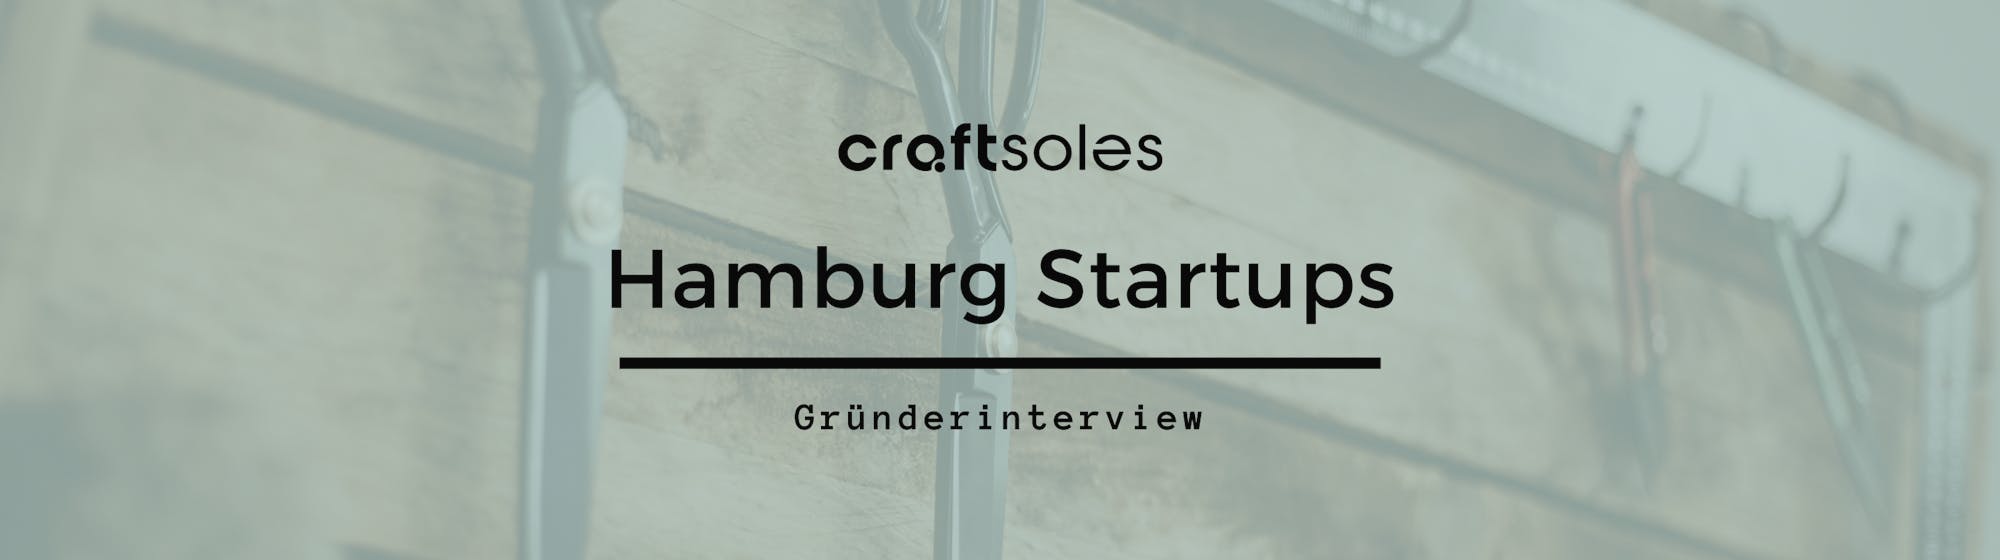 craftsoles Hamburg Startups Interview